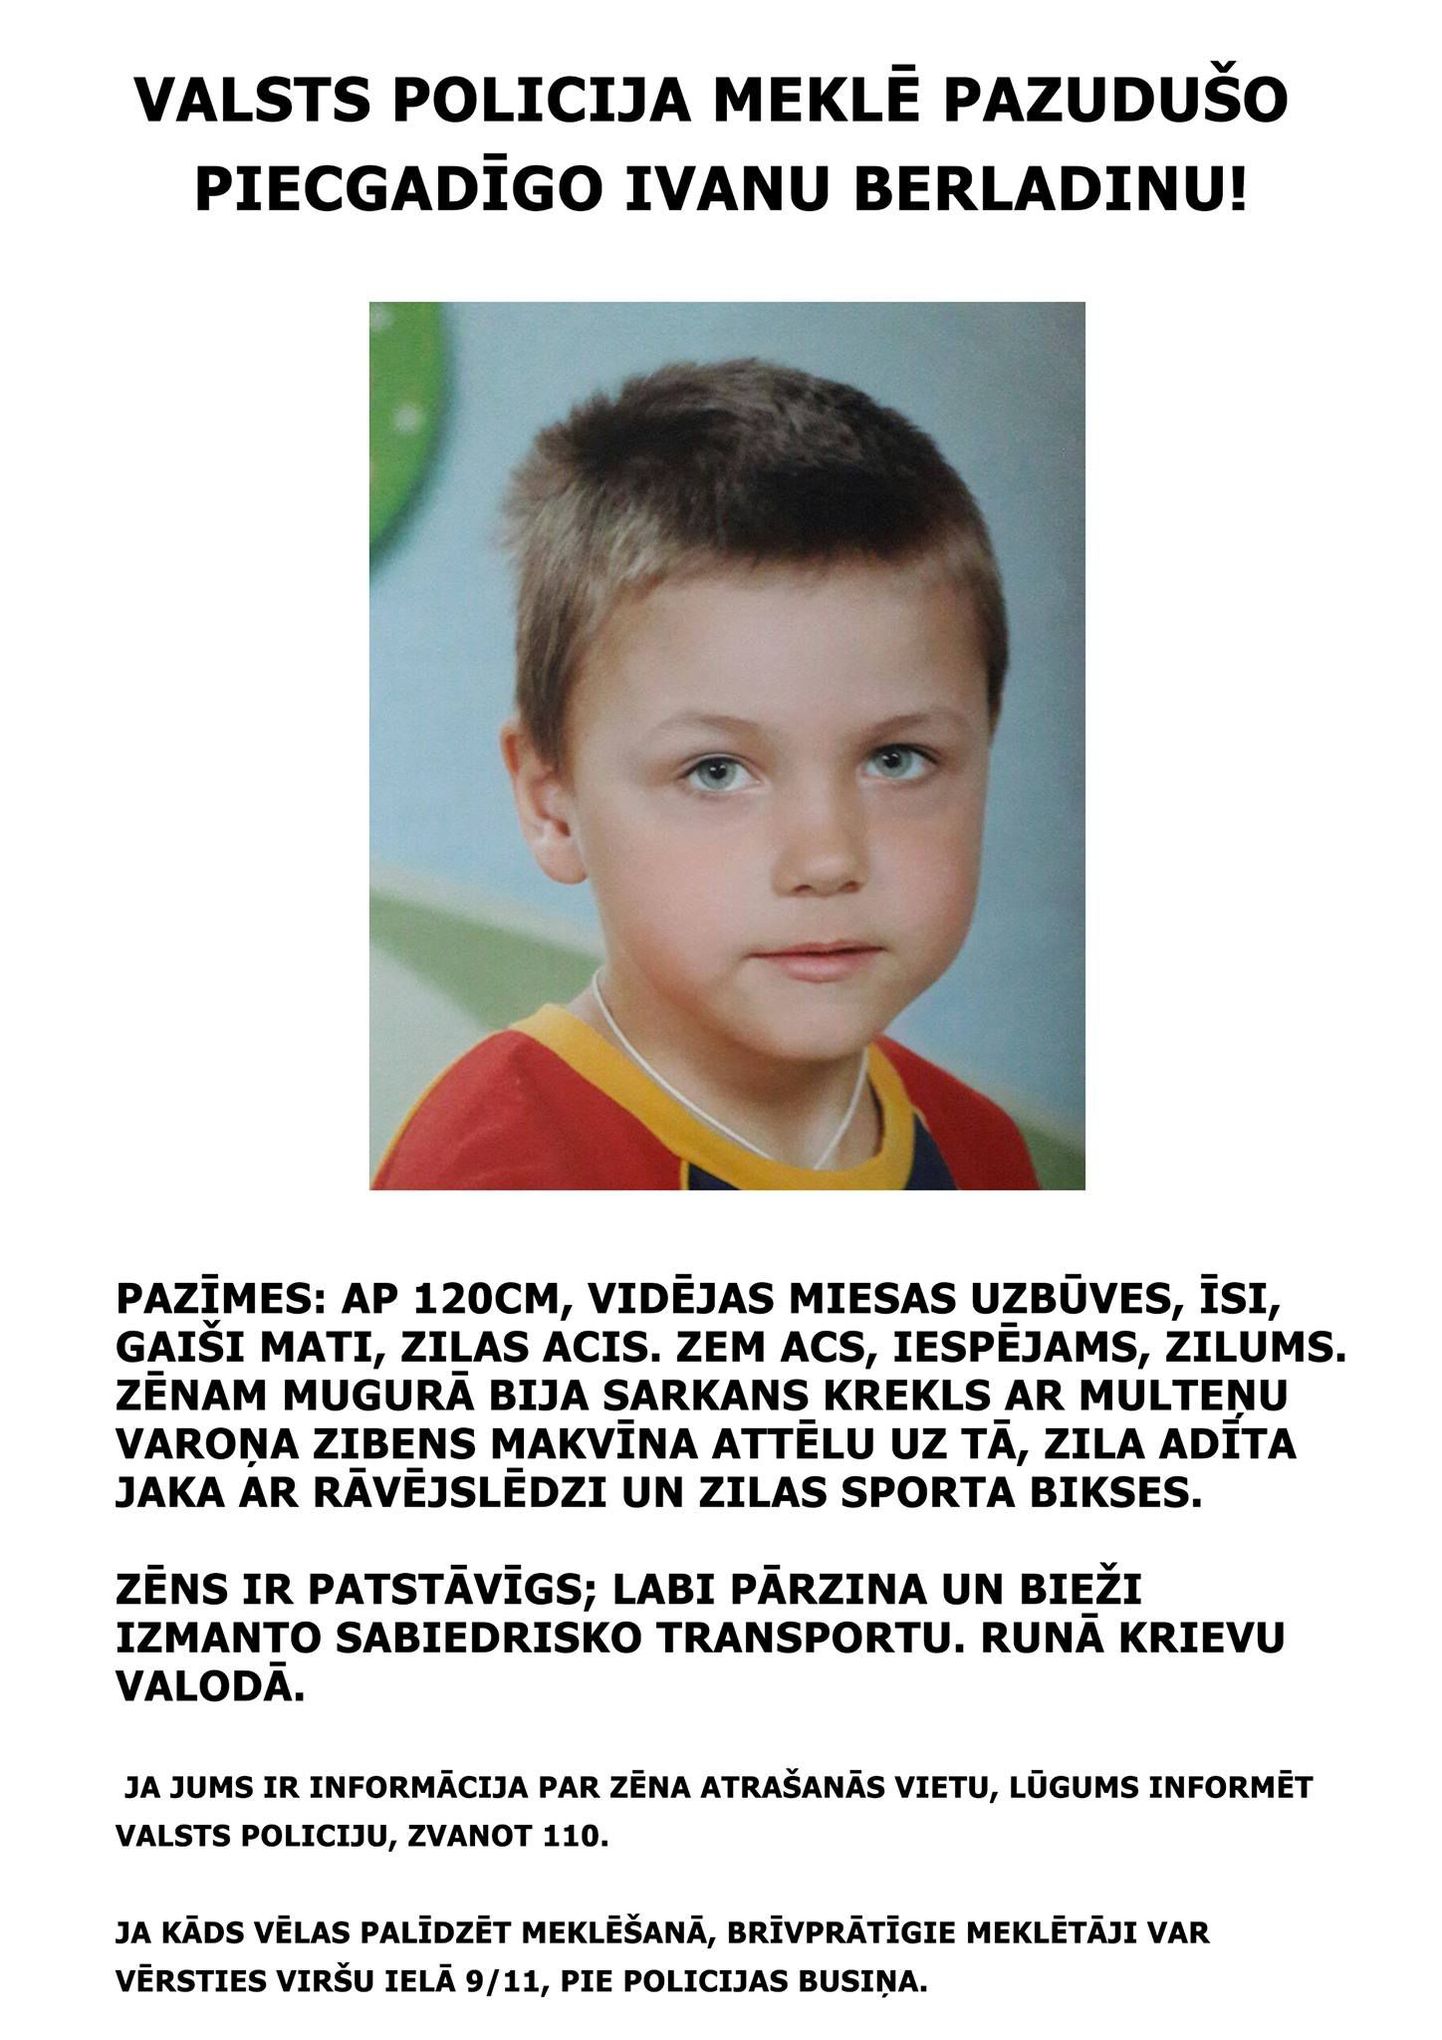 Сообщение латвийской полиции о пропавшем ребенке.